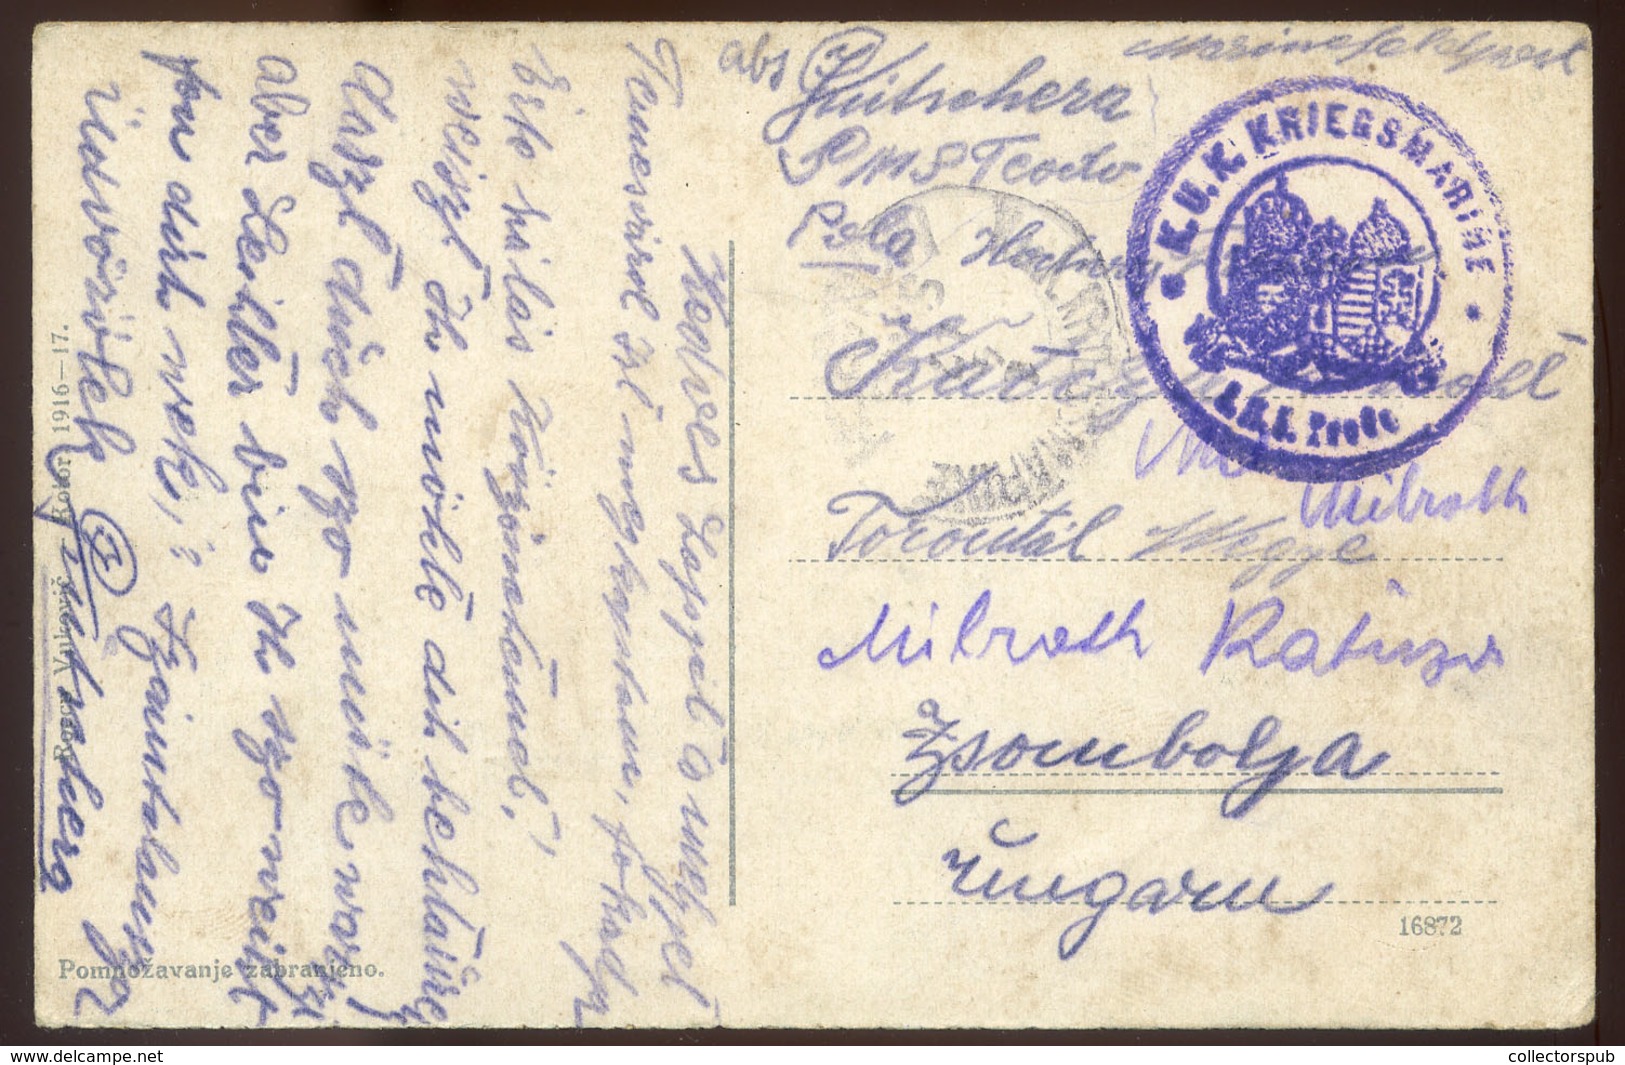 97714 K.u.K. Haditengerészet, I.VH Tábori Posta Képeslap / Field Postcard 'K.u.k. KRIEGSMARINE S.M.S. Teodo - Briefe U. Dokumente